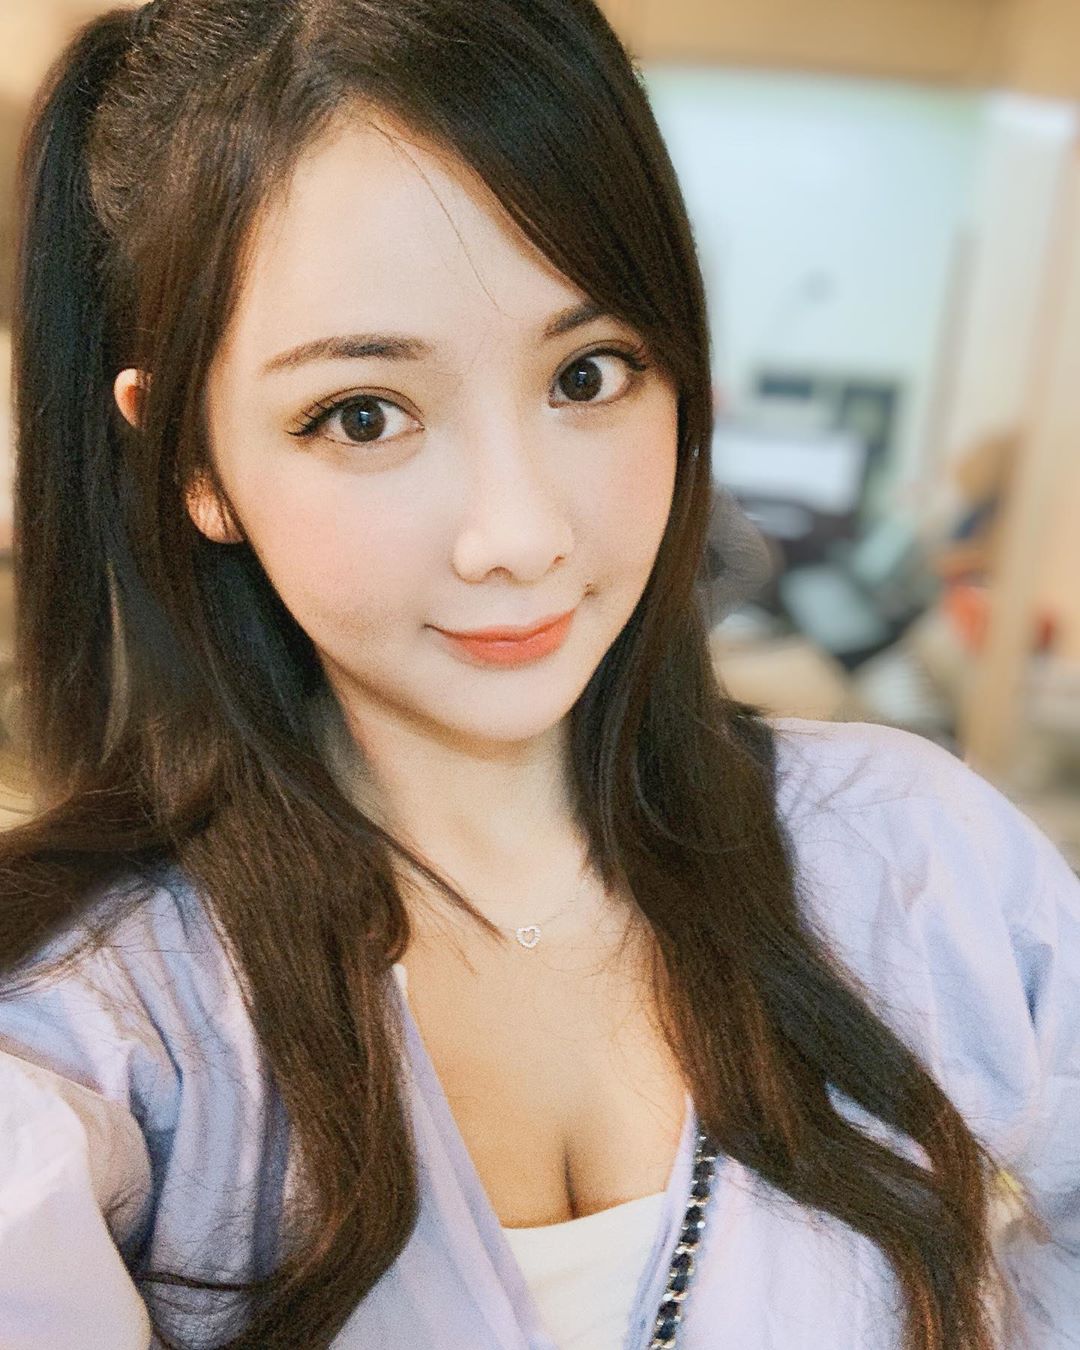 Nurses wear in bikini, Cute girl Li Yen Yen